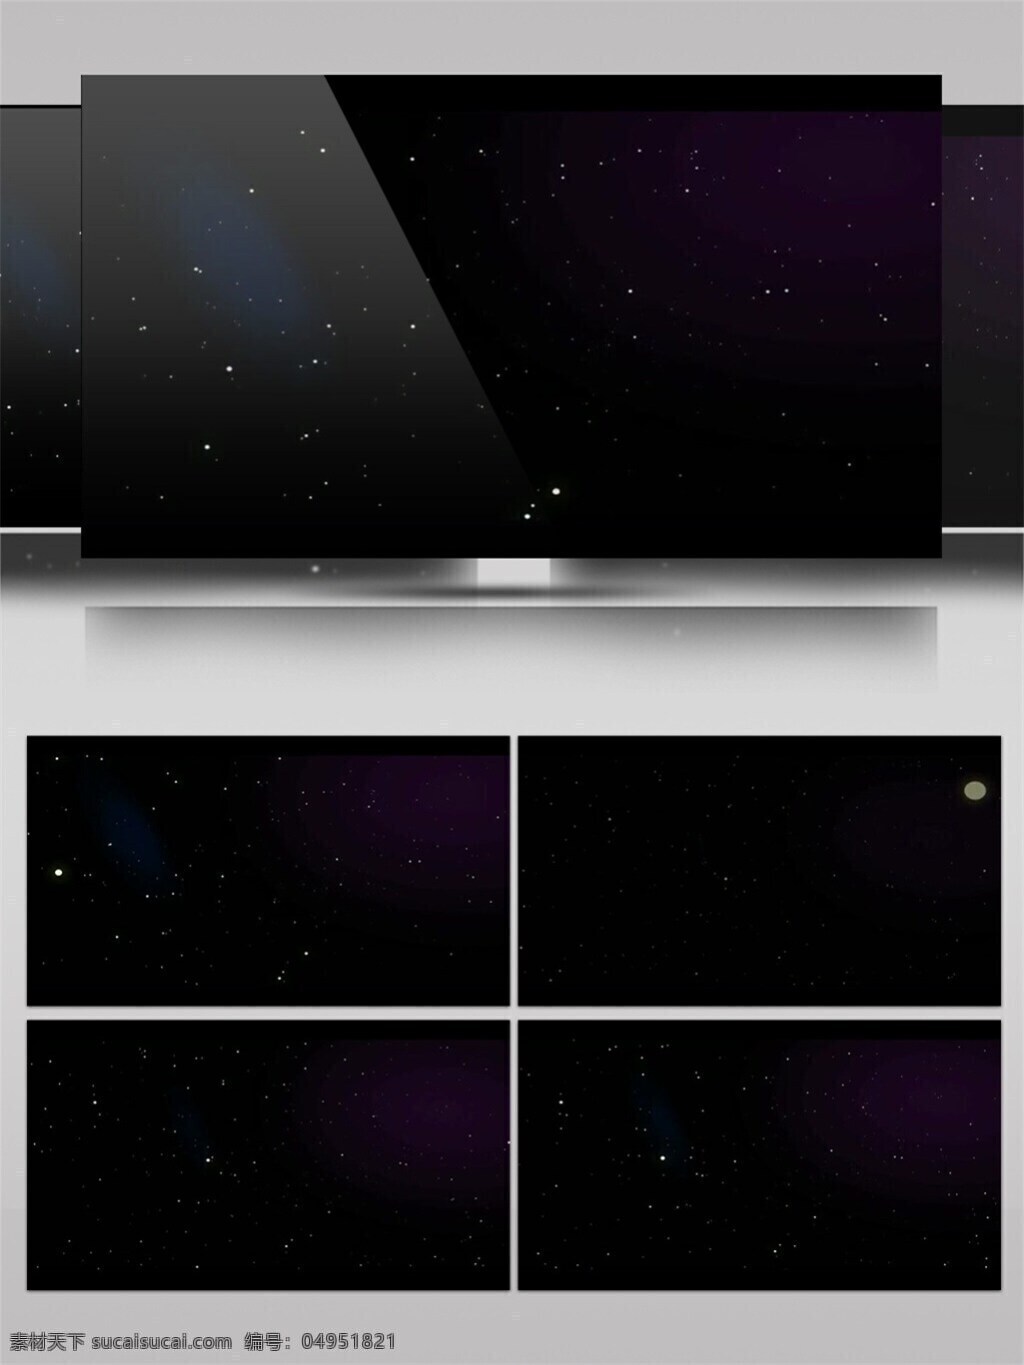 星际 光束 星球 高清 视频 宇宙 视觉享受 手机壁纸 电脑屏幕保护